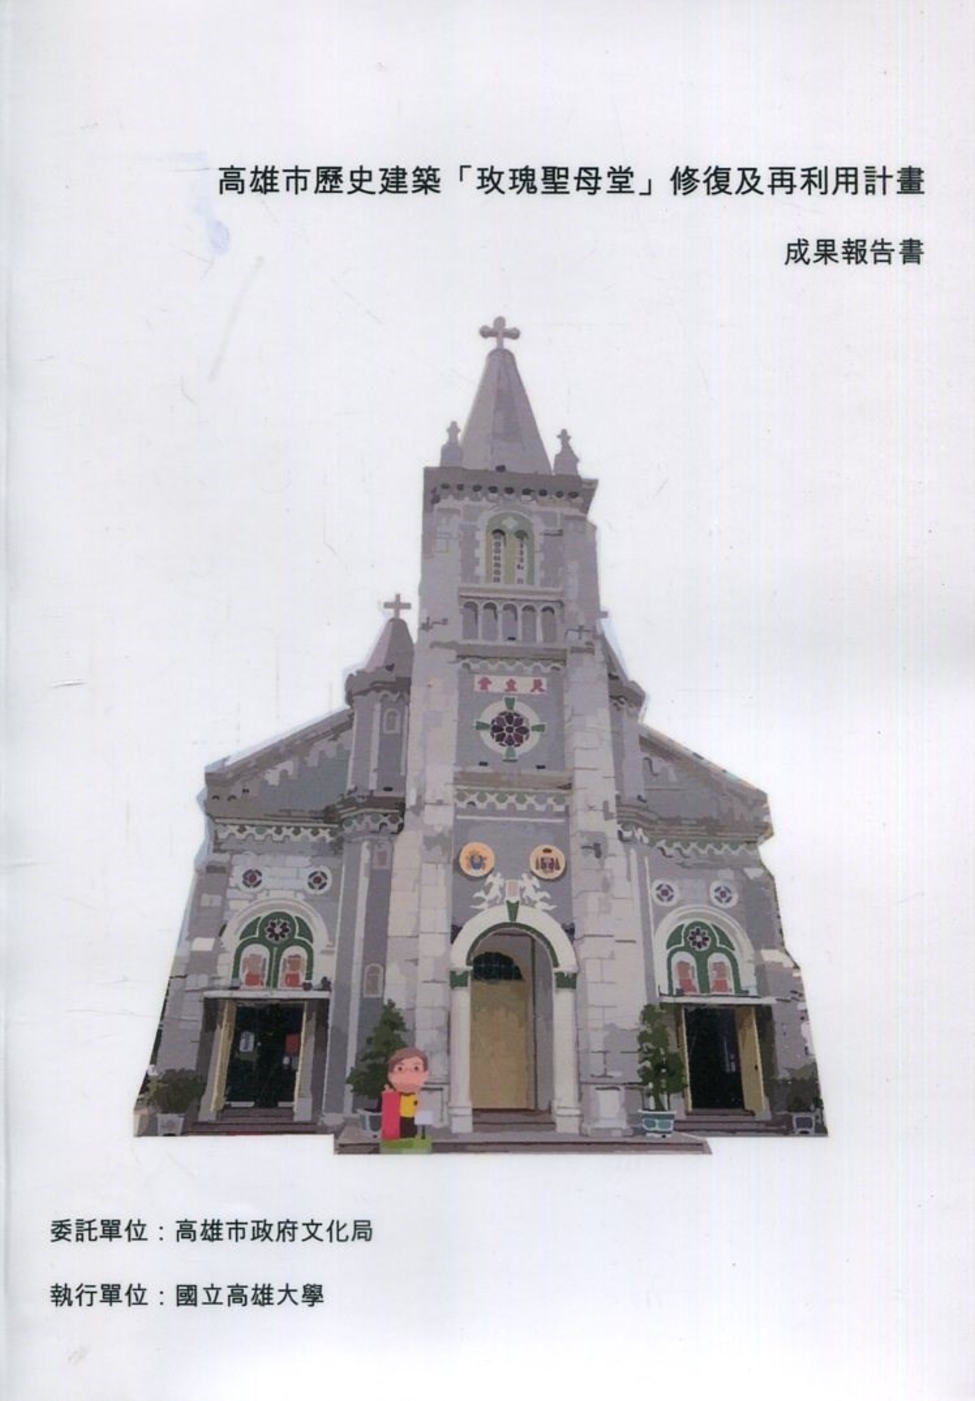 高雄市歷史建築「玫瑰聖母堂」修復及再利用計畫 成果報告書